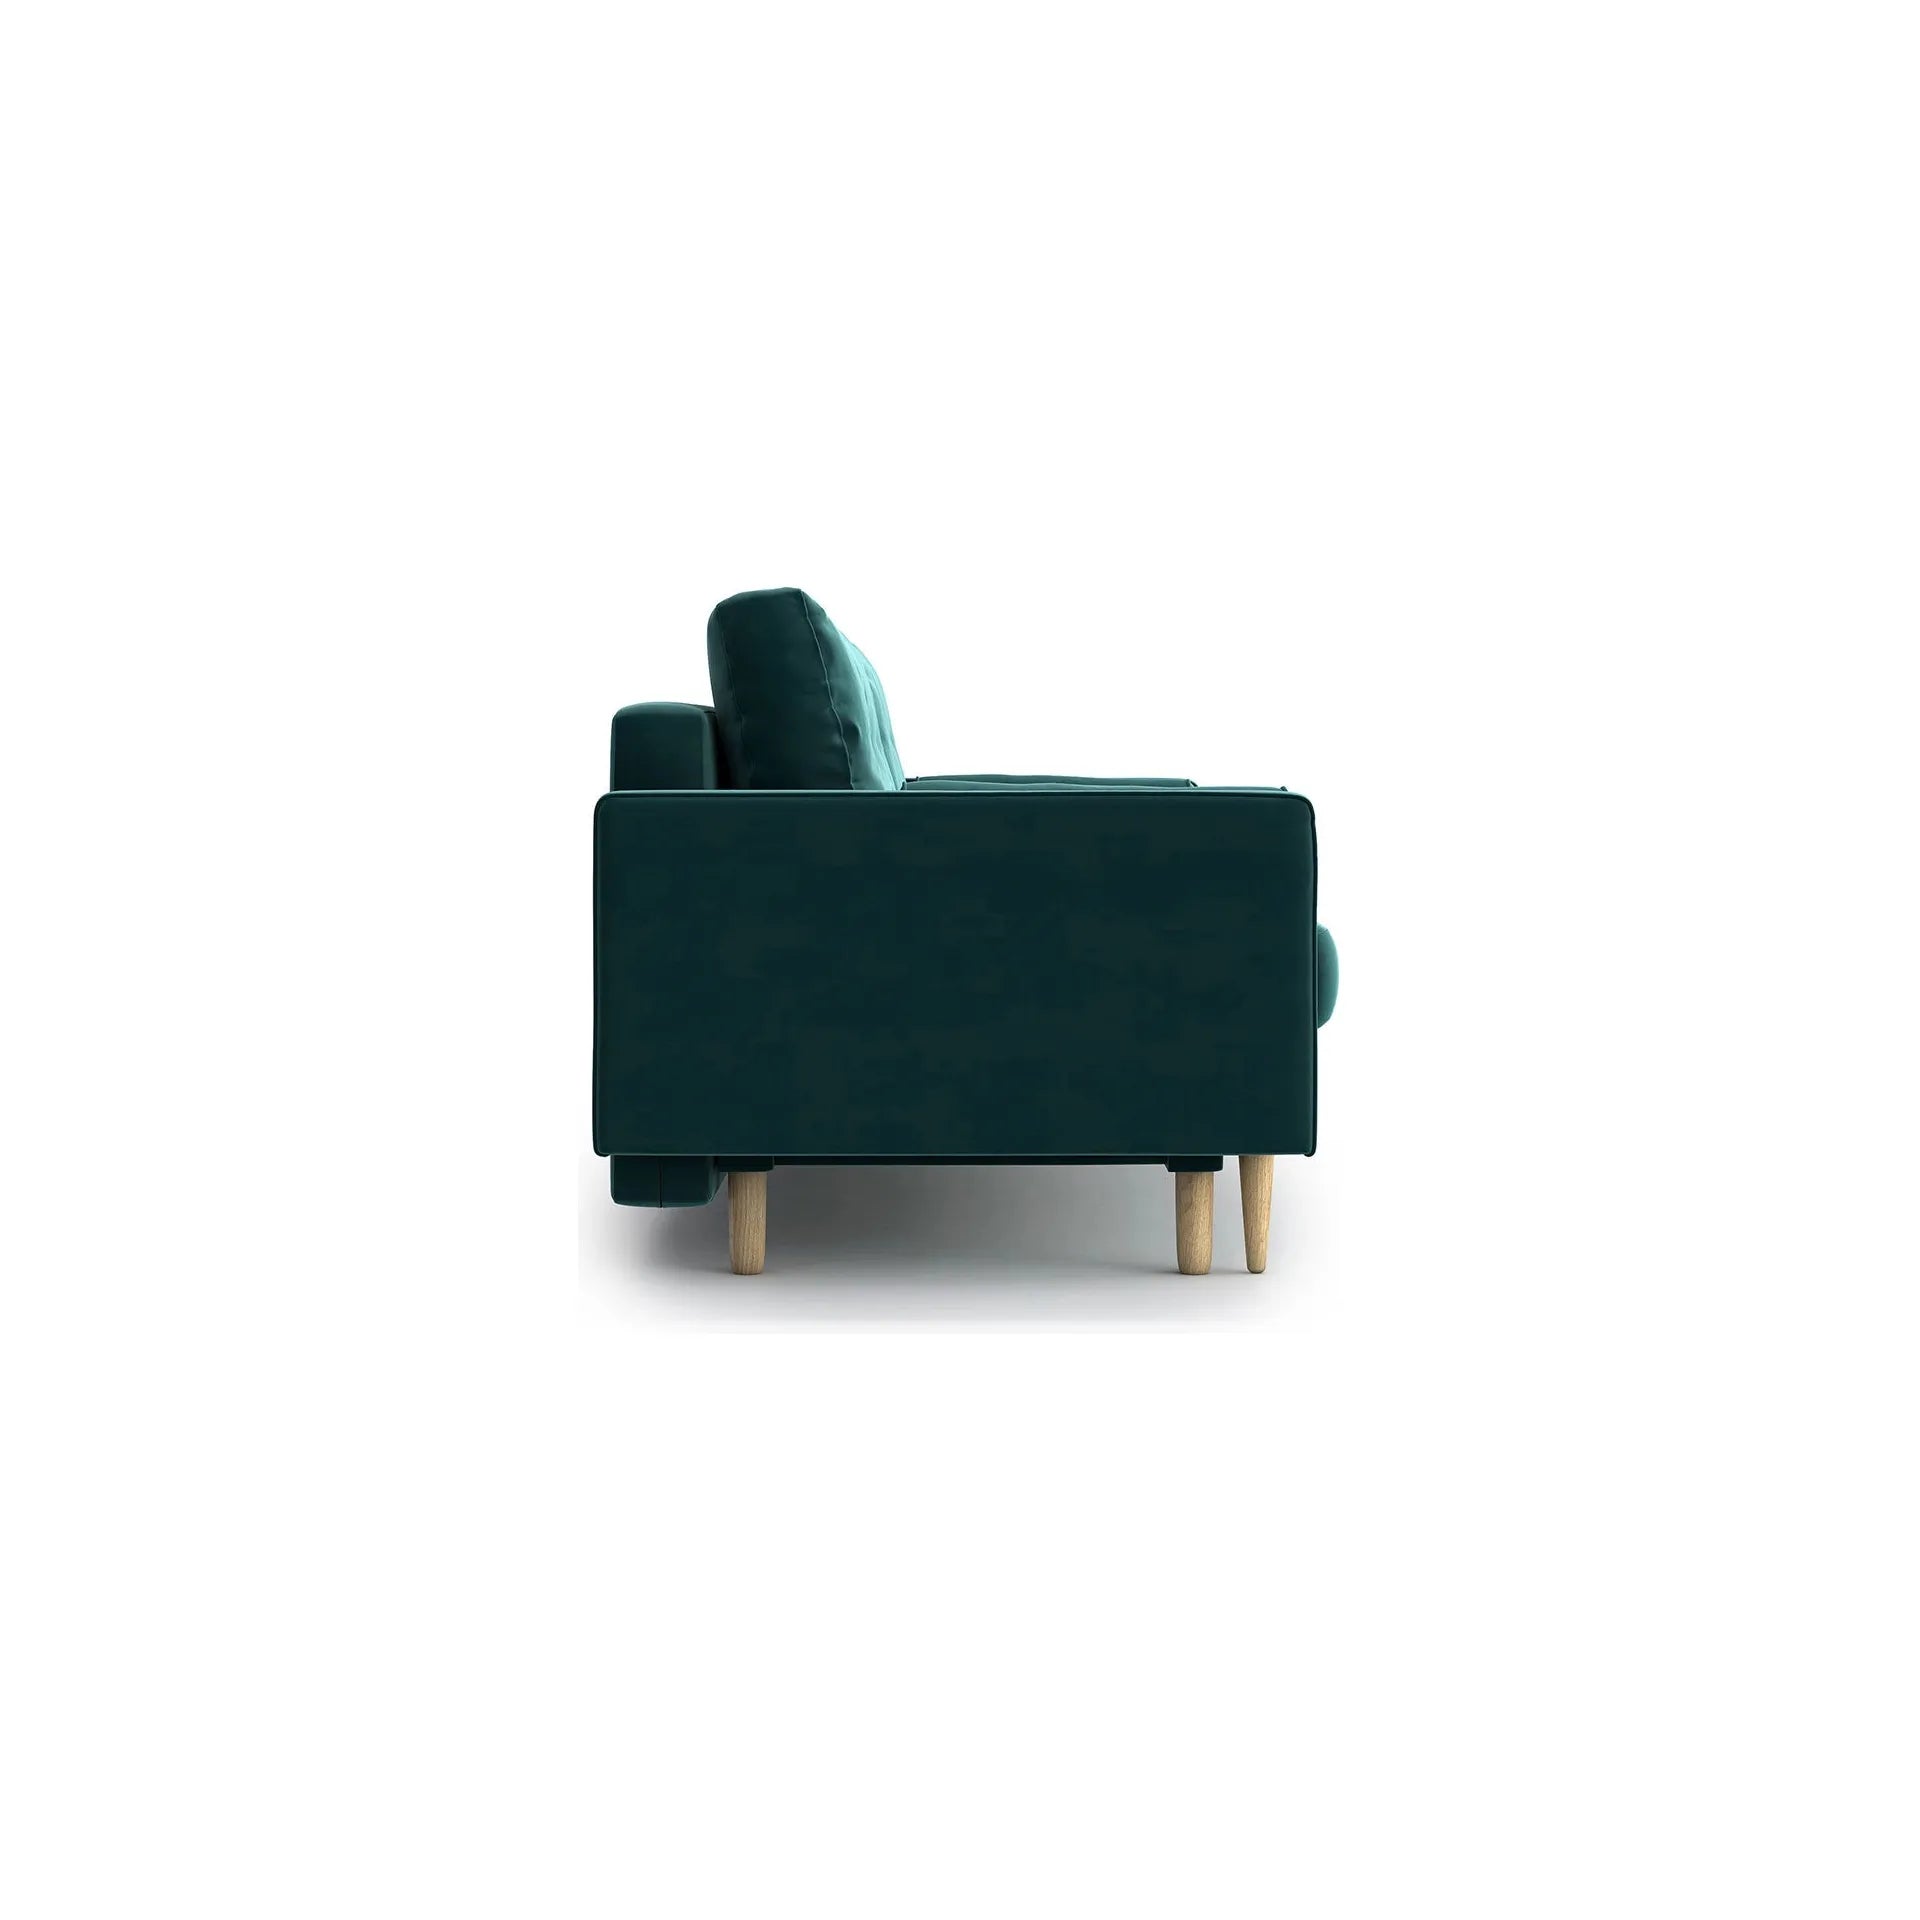 ESME dygsniuota 3 vietų sofa lova, žalia/mėlyna spalva